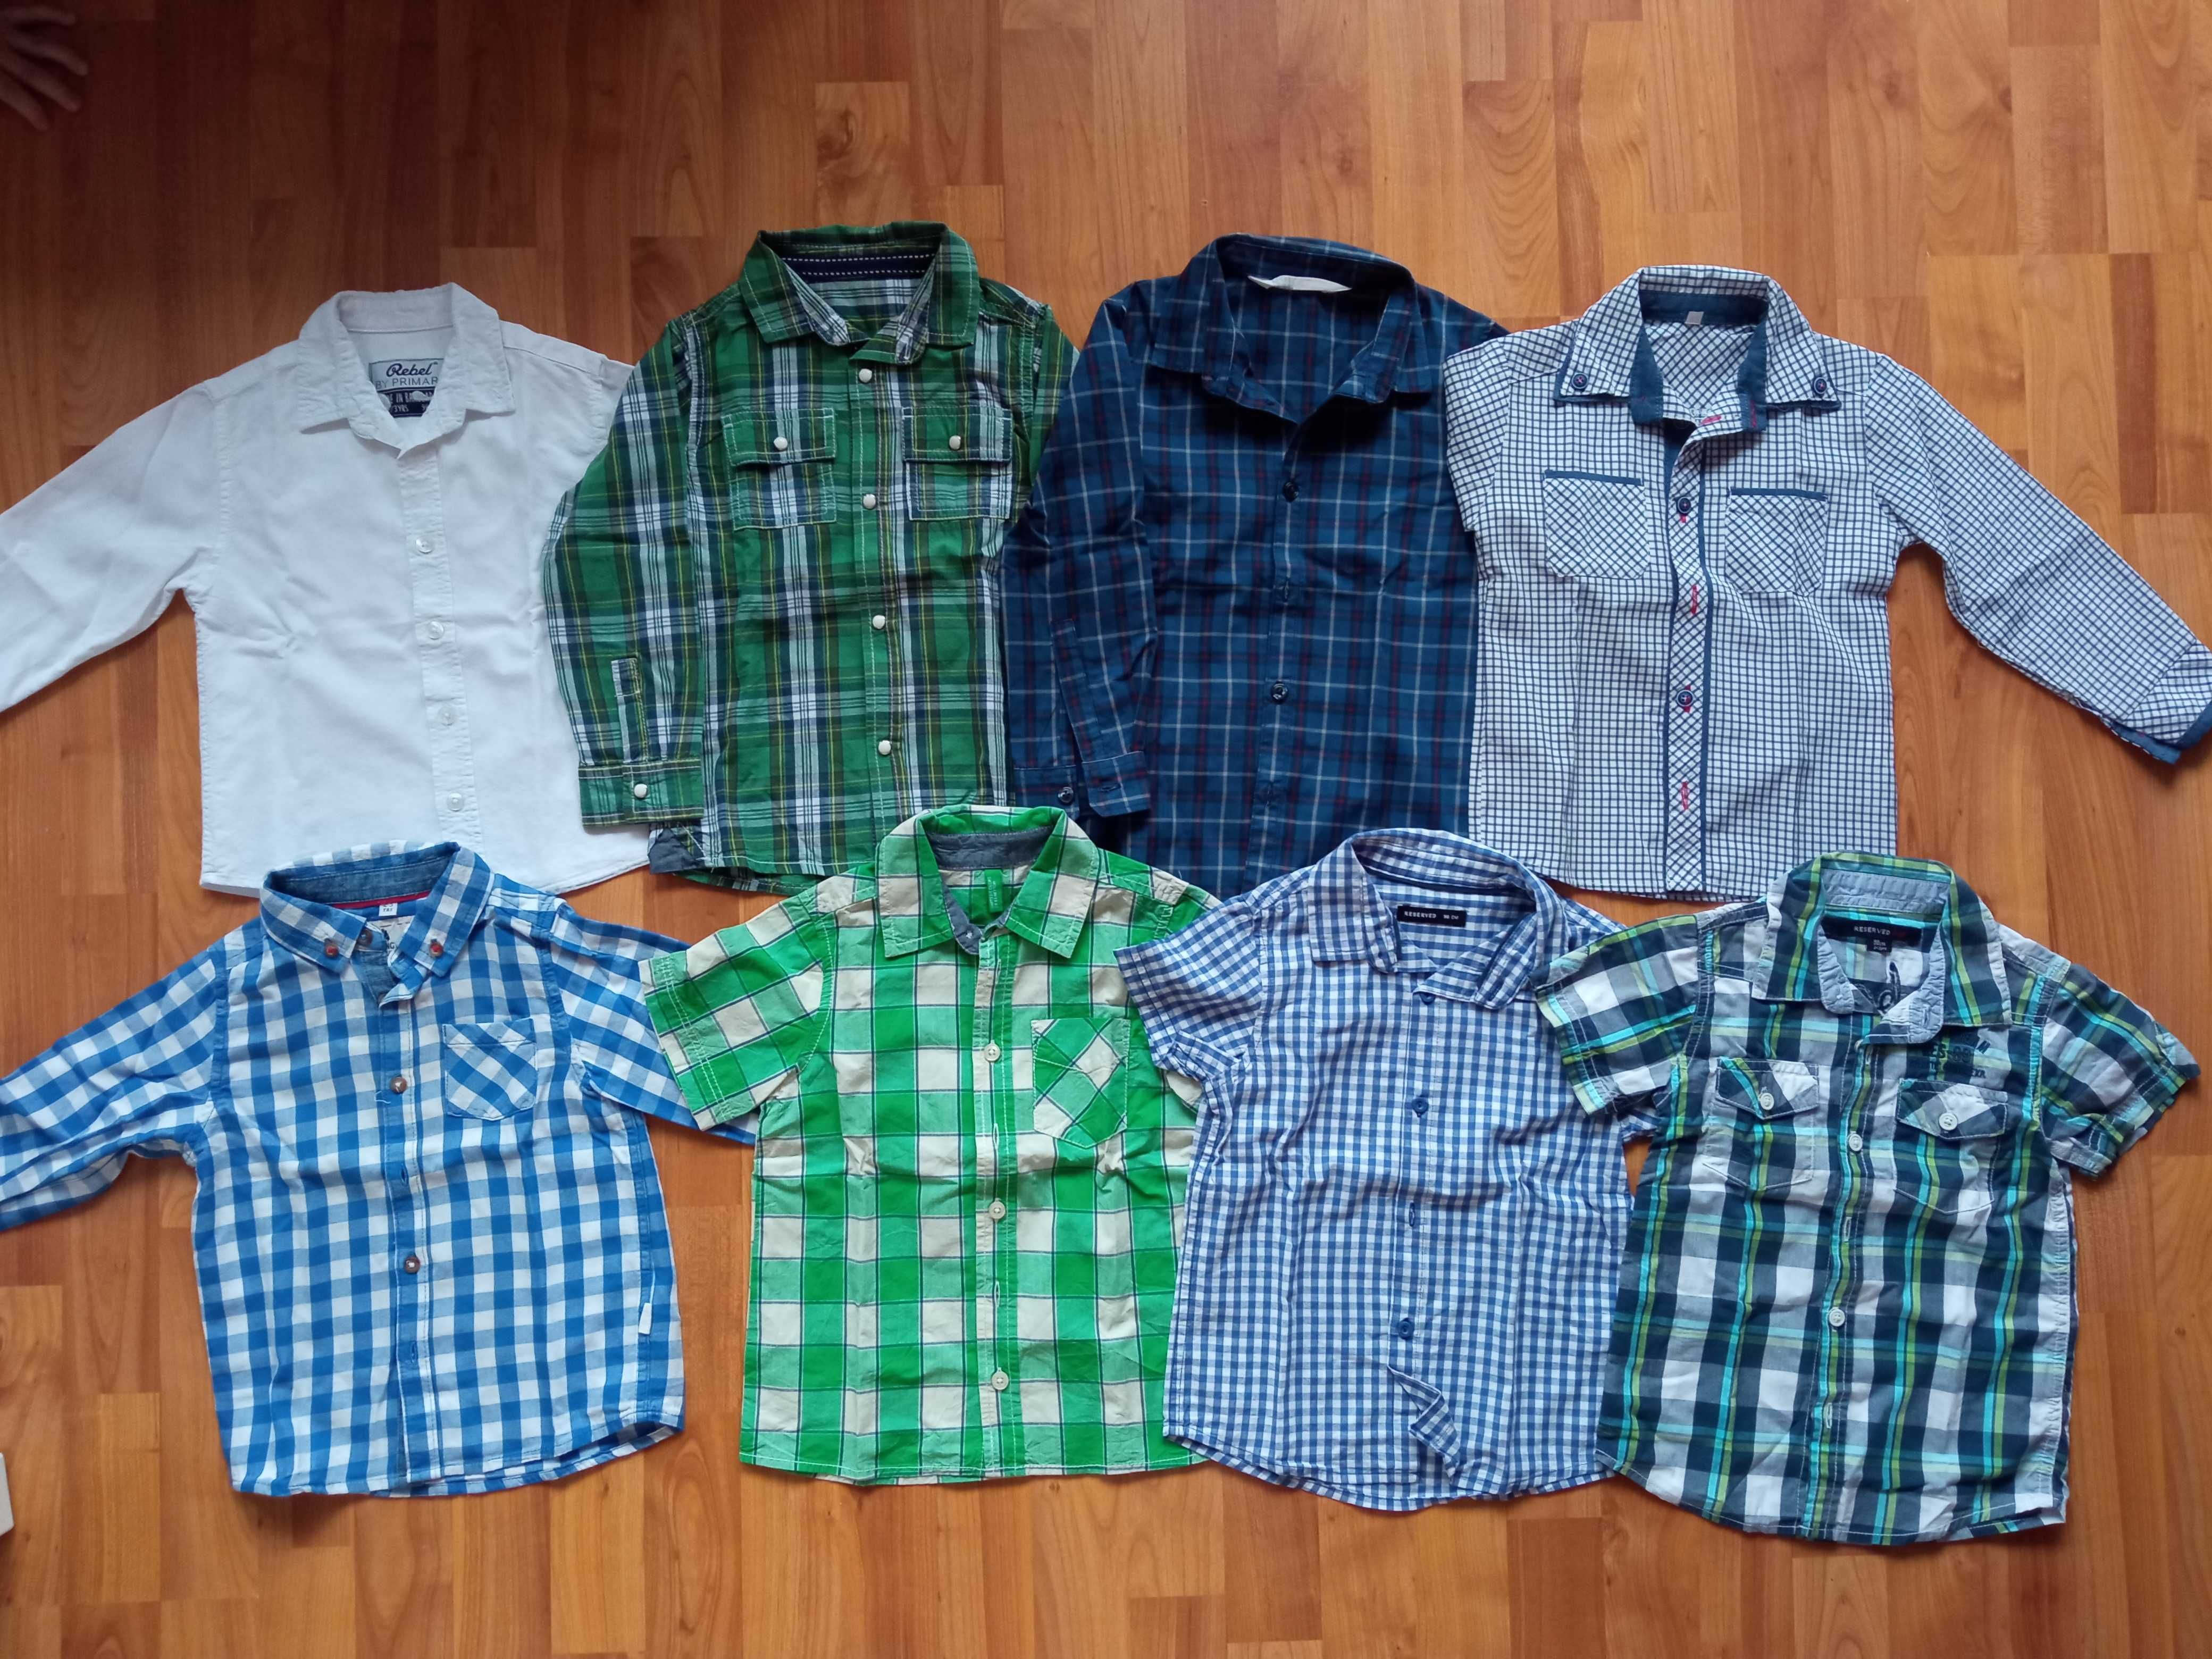 Paka ubrań wiosna jesień 3-4 lata r. 98, 104 bluza, spodnie 80 szt